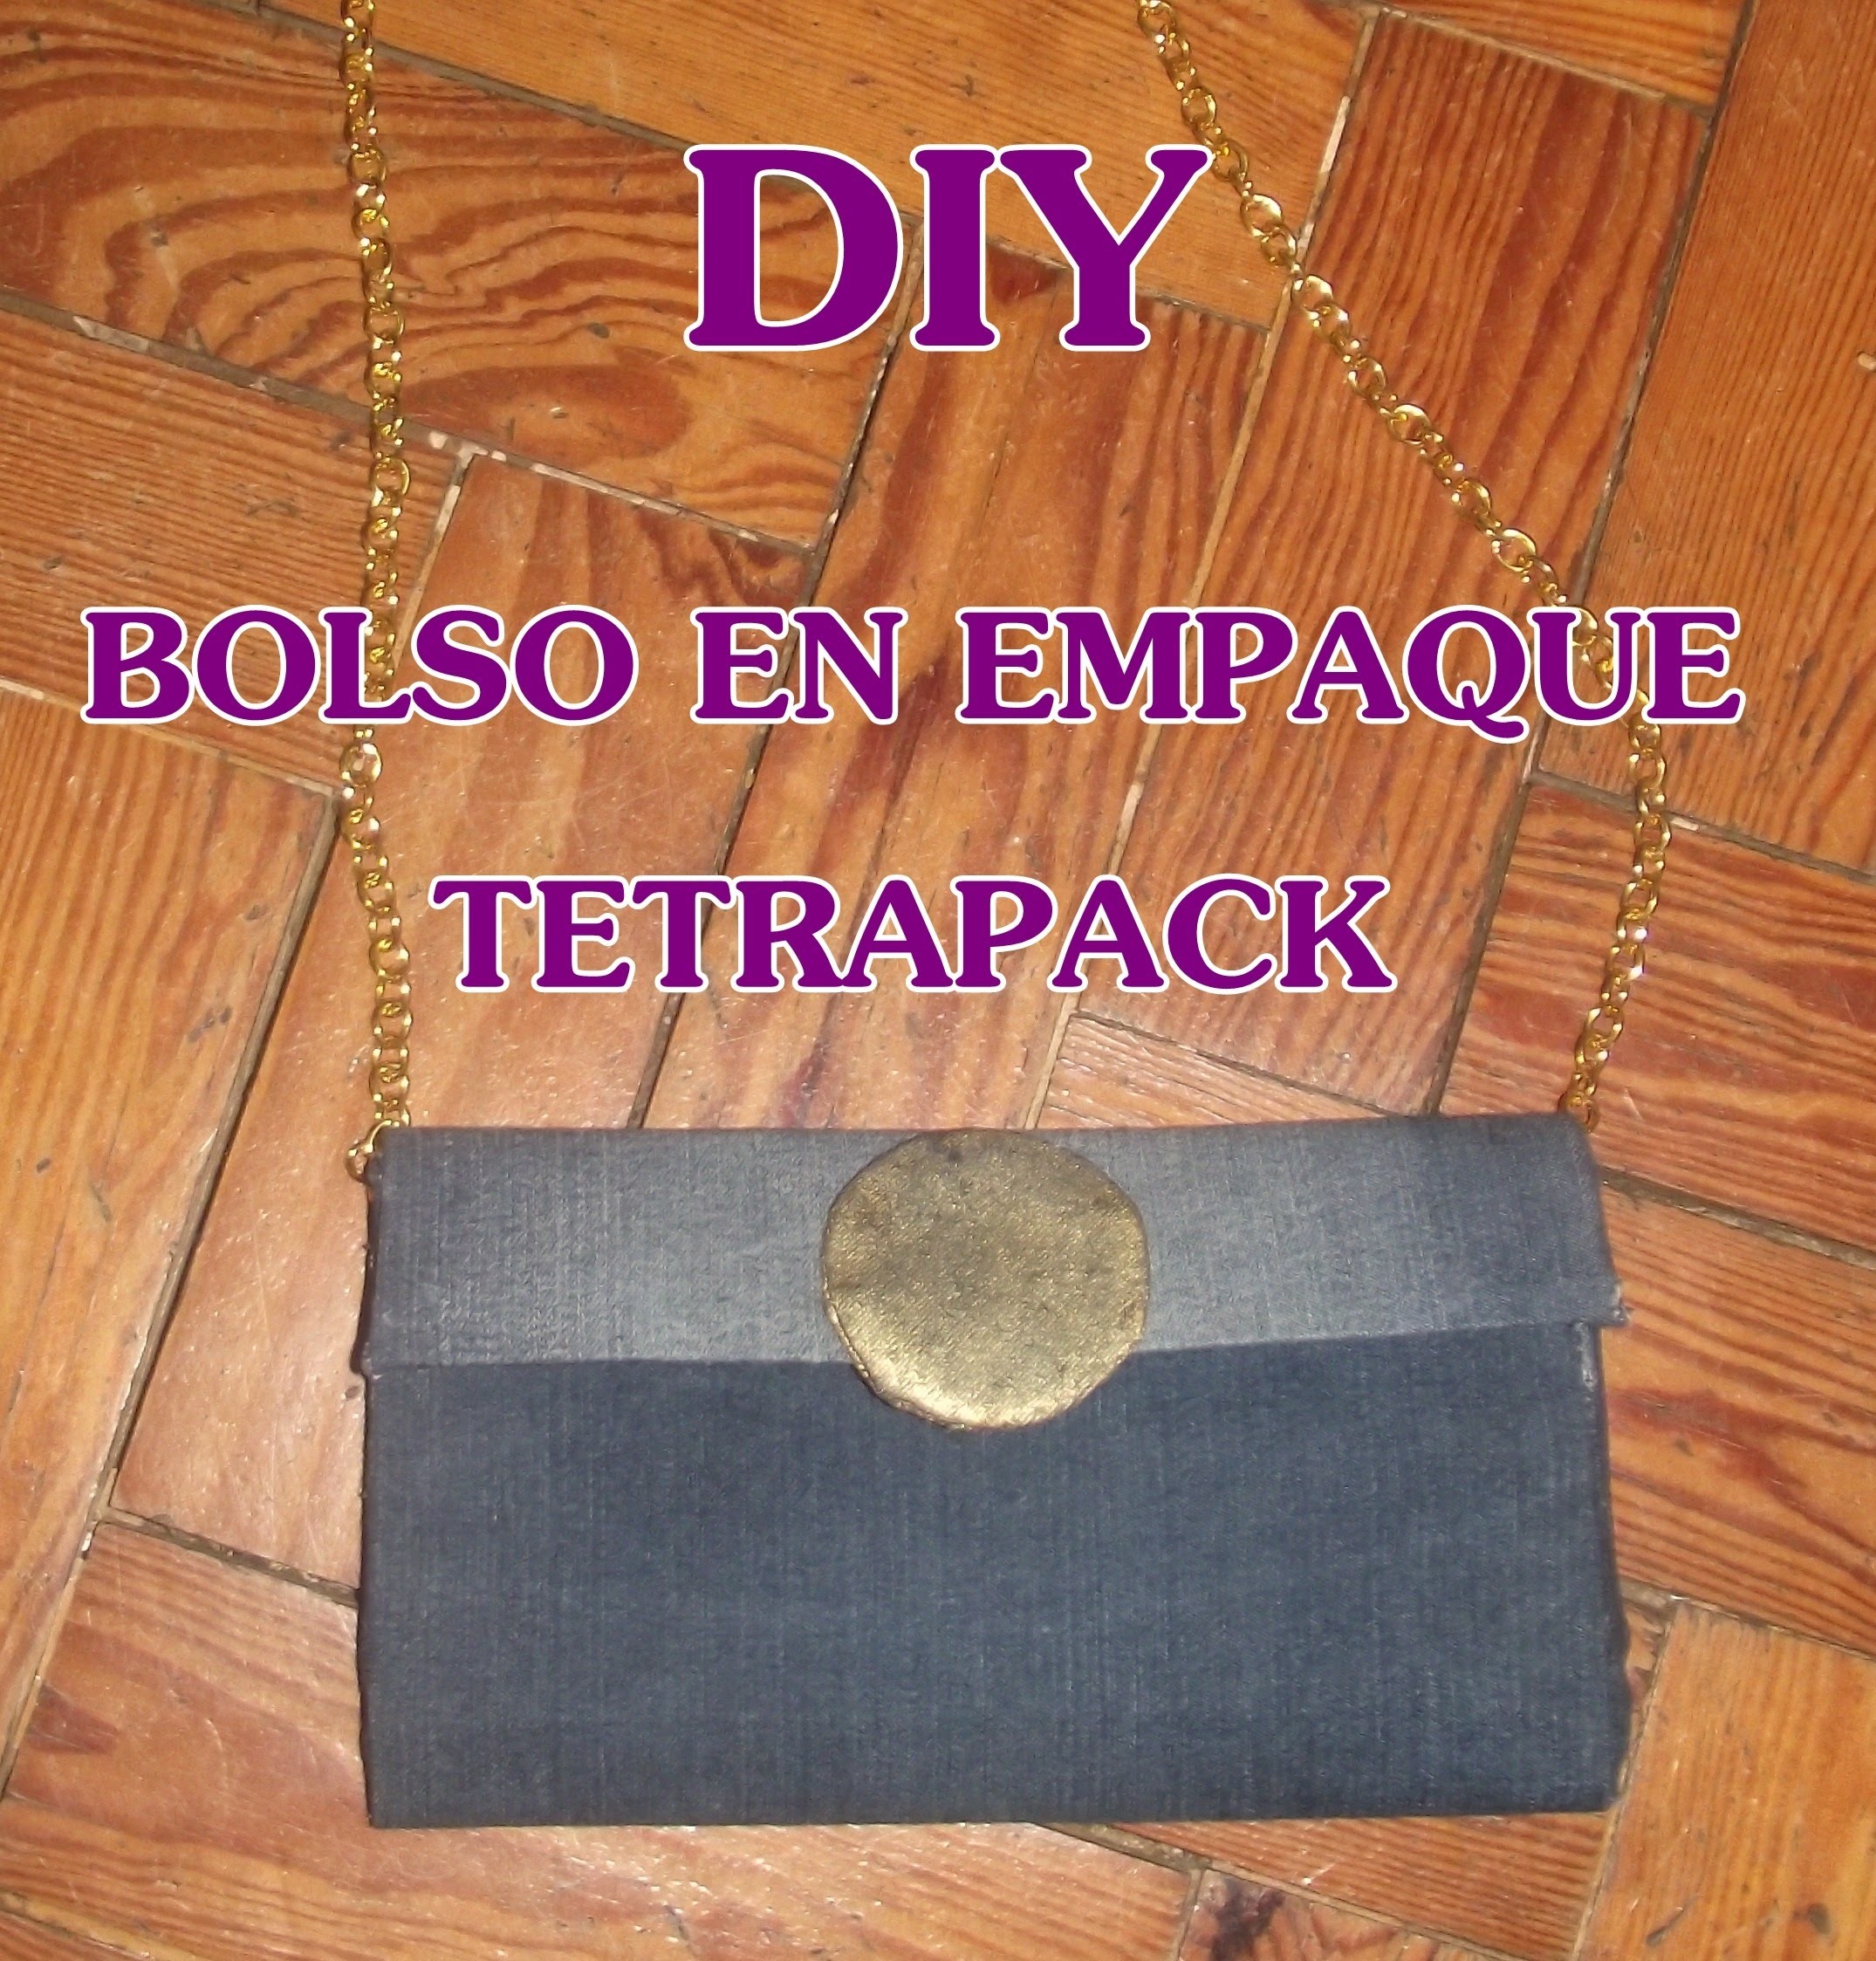 DIY: BOLSO EN EMPAQUE TETRAPACK